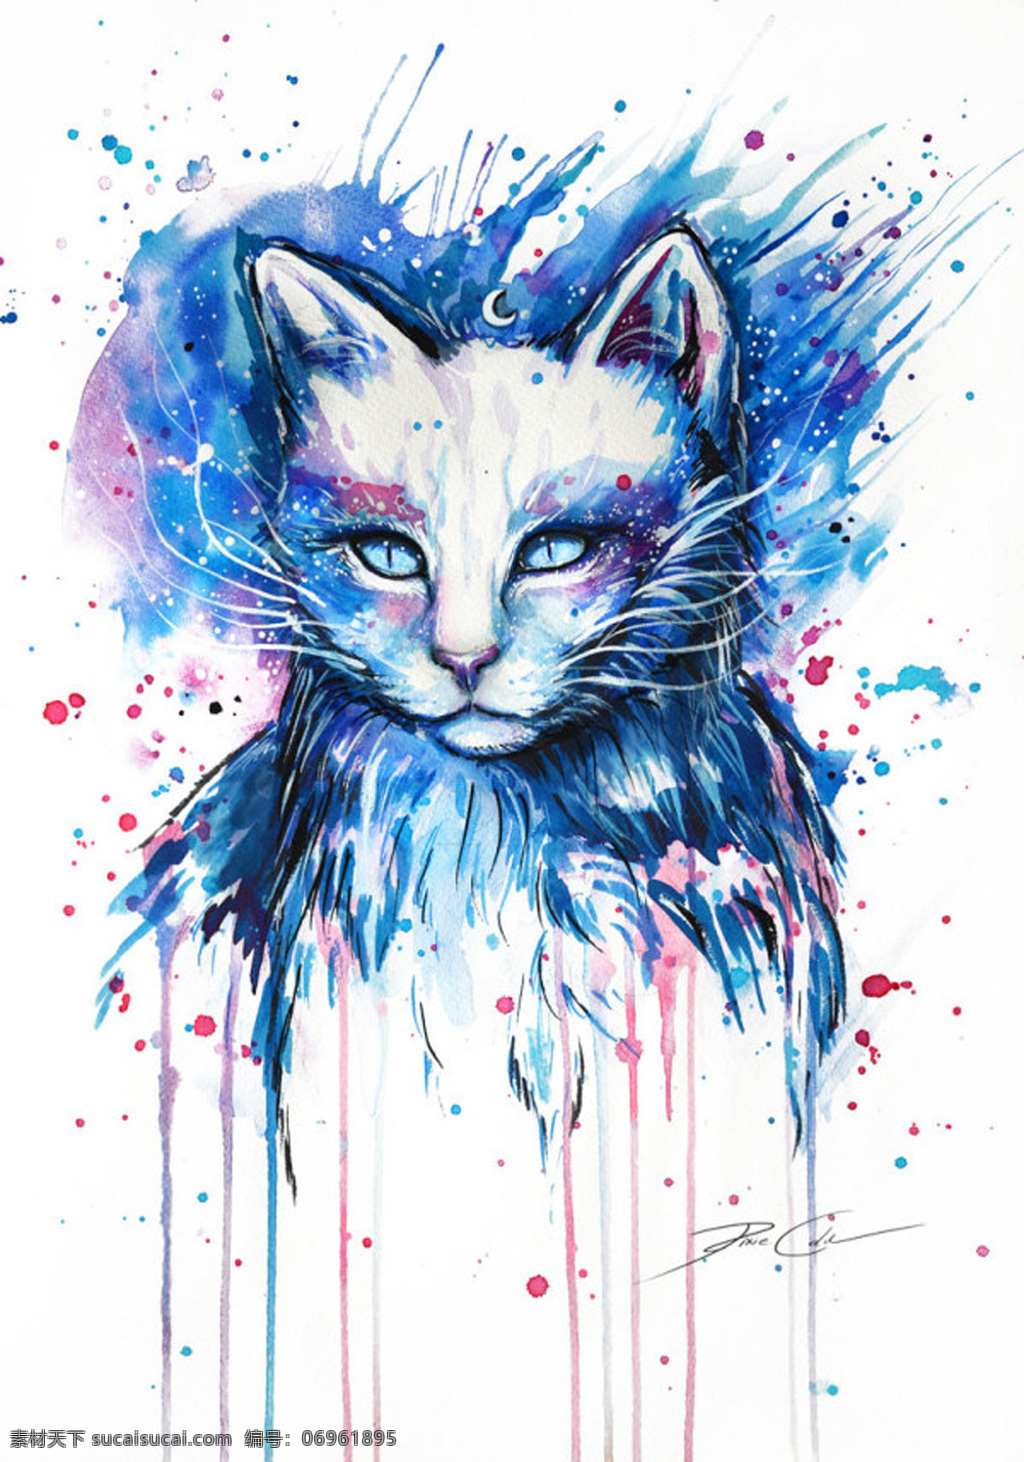 猫 手绘 抽象 动物 绘画书法 水彩 文化艺术 设计素材 模板下载 猫手绘